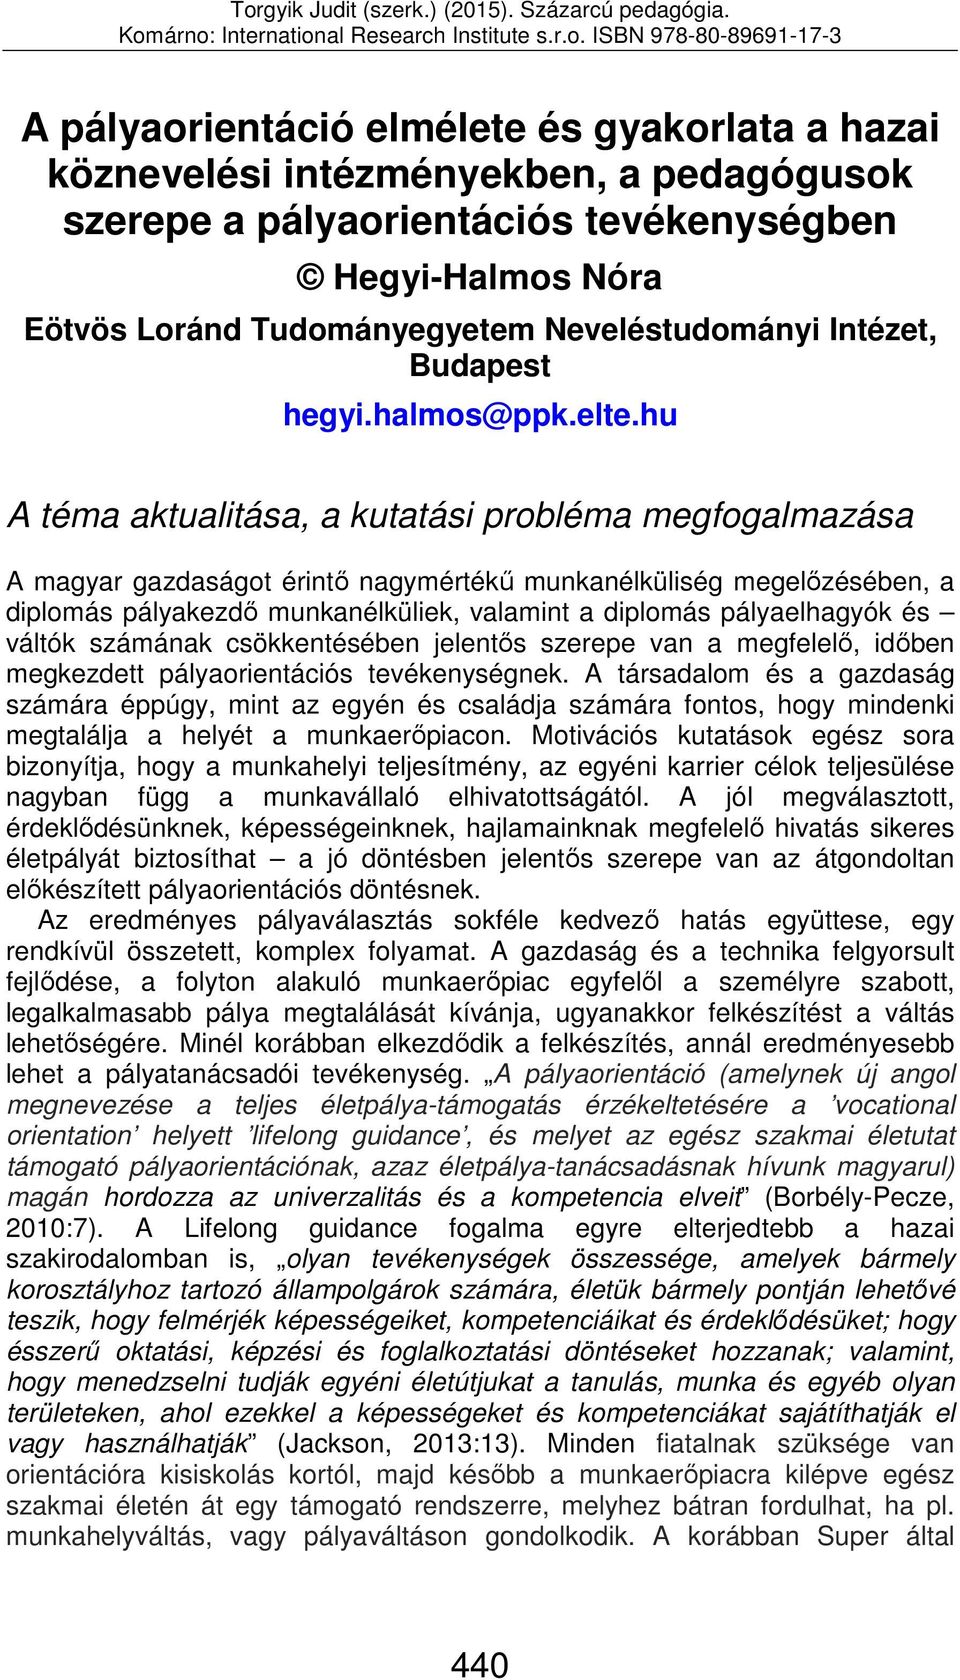 hu A téma aktualitása, a kutatási probléma megfogalmazása A magyar gazdaságot érintő nagymértékű munkanélküliség megelőzésében, a diplomás pályakezdő munkanélküliek, valamint a diplomás pályaelhagyók